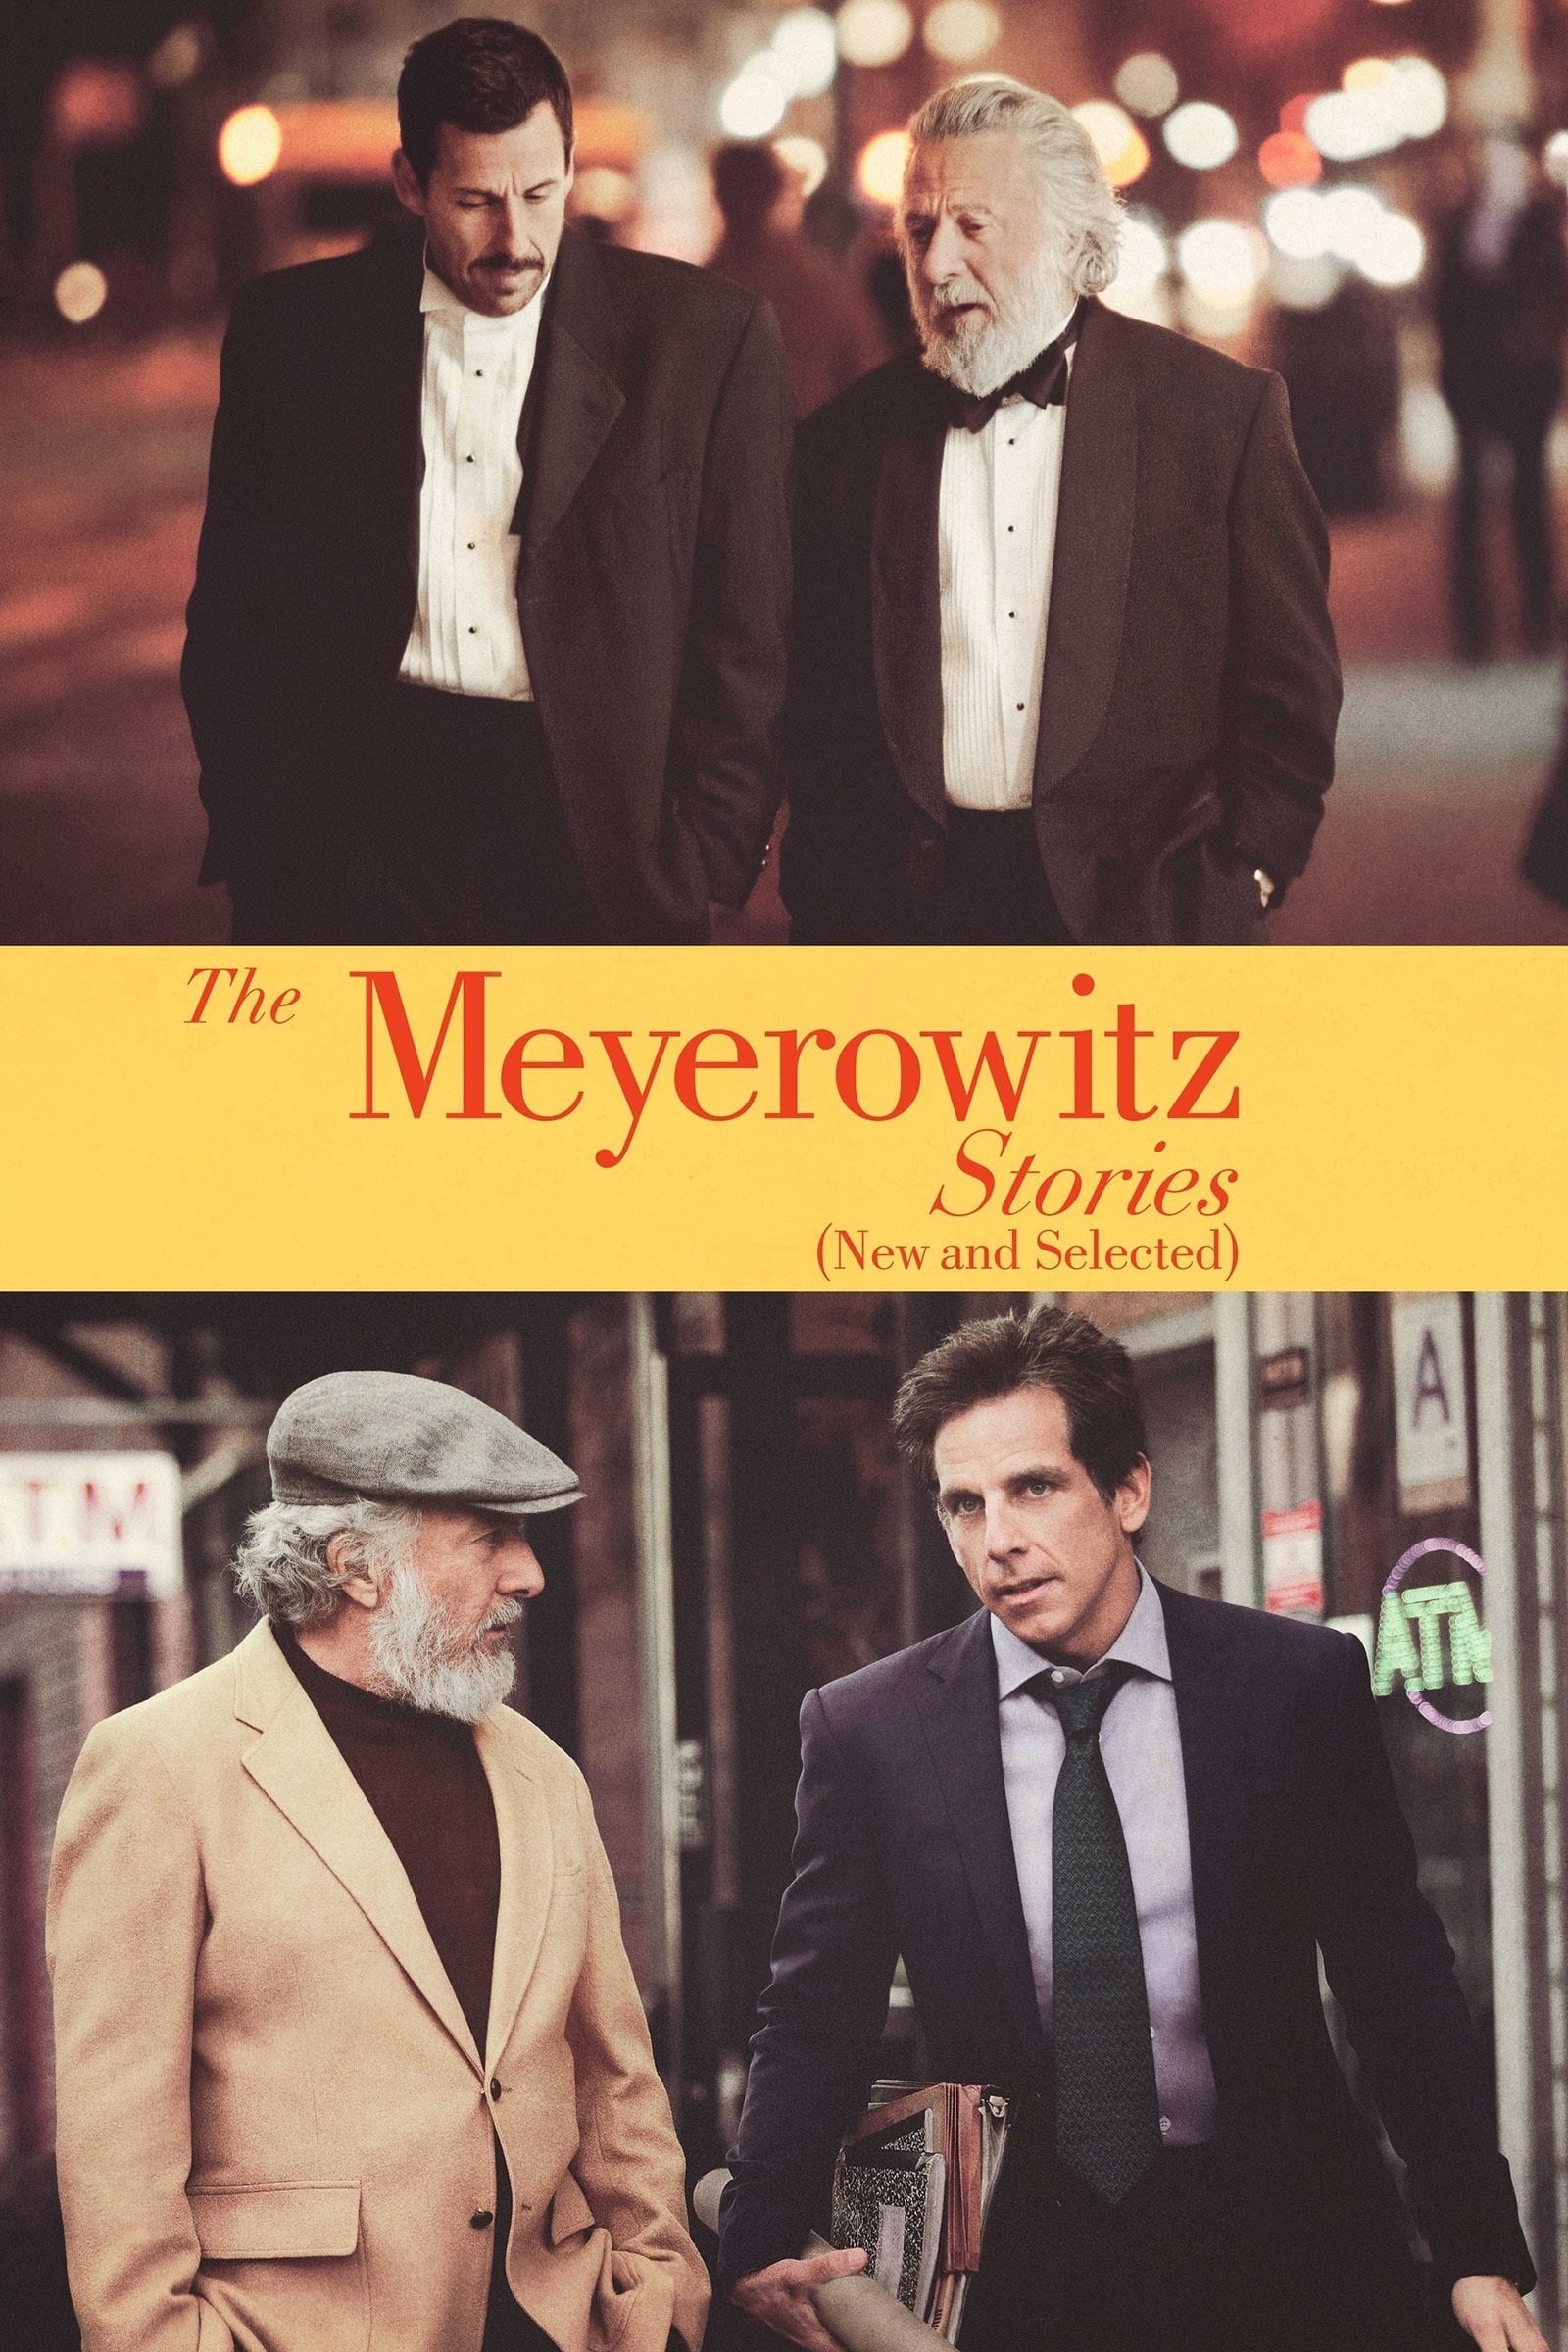 The Meyerowitz Stories film